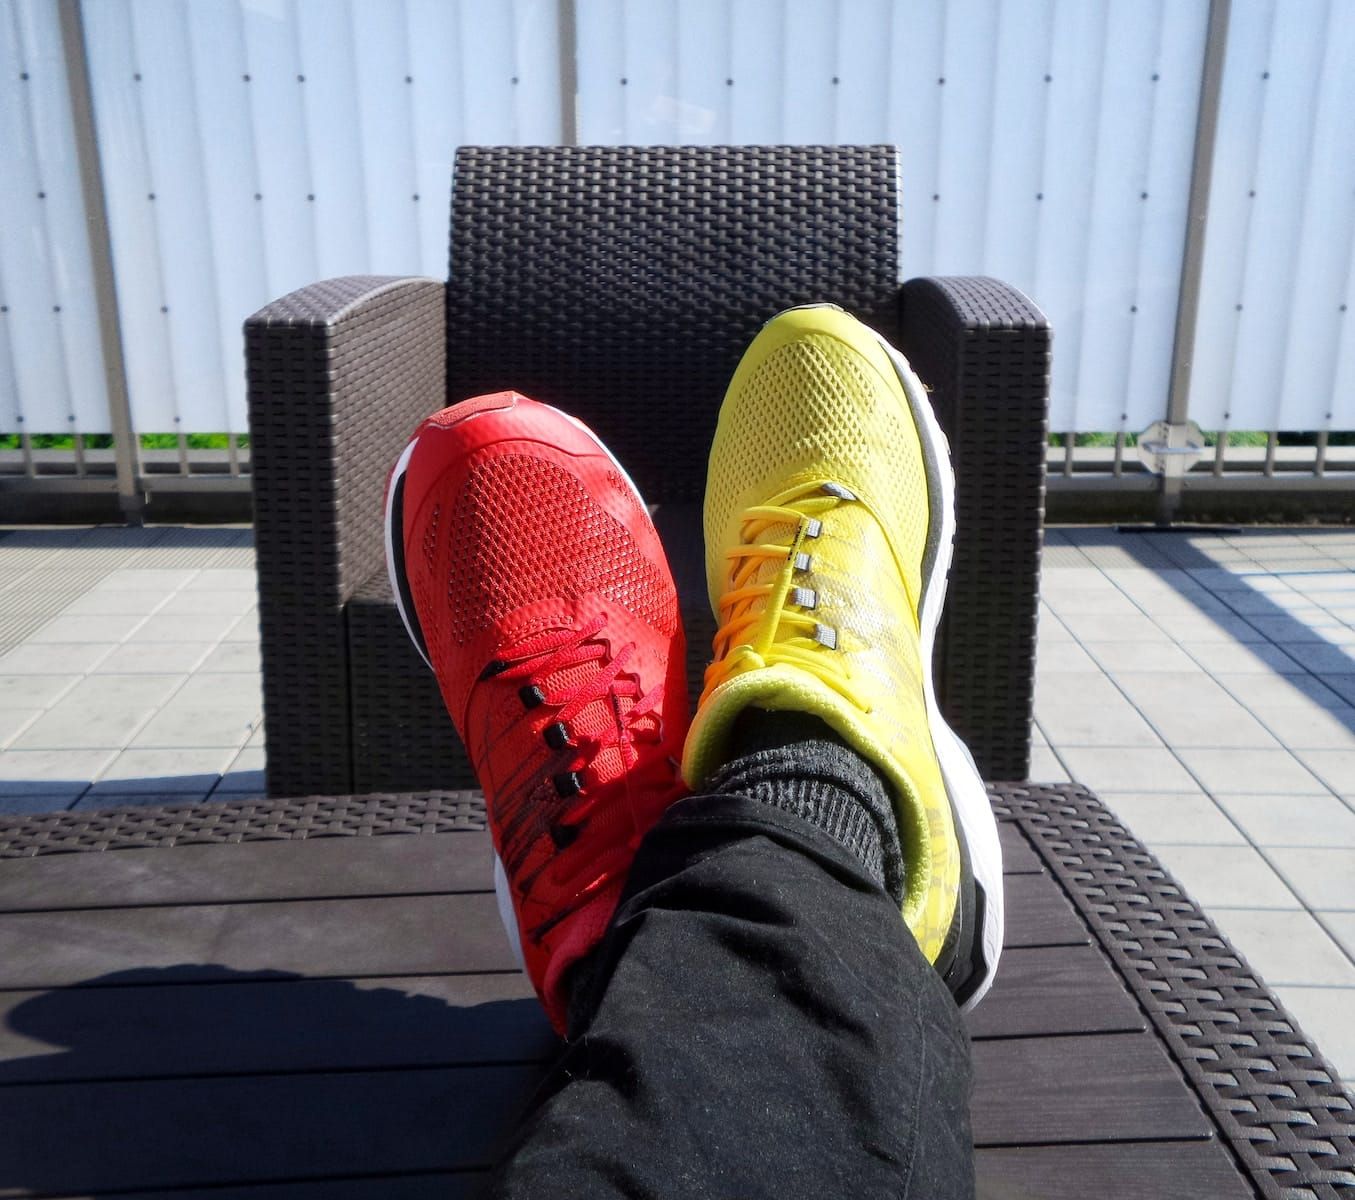 Đôi giày thể thao màu đỏ và vàng